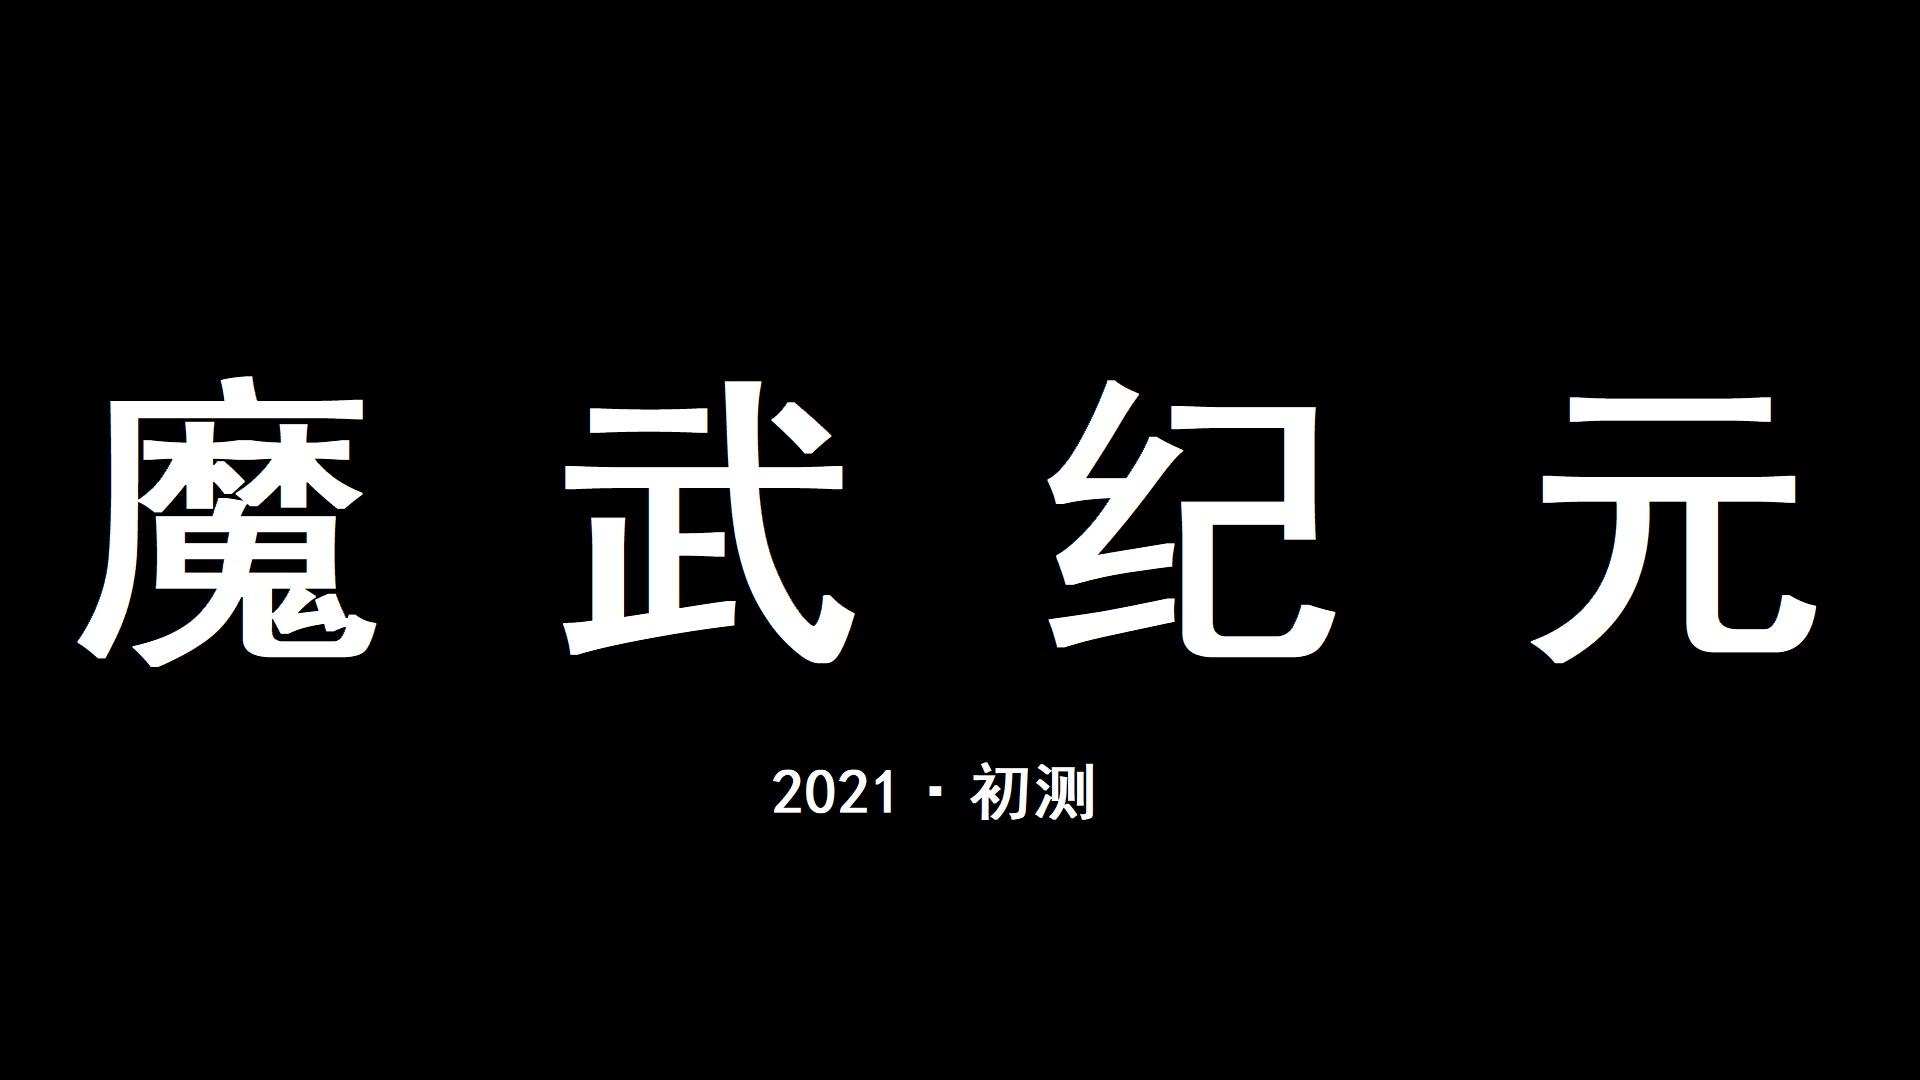 Banner of Mo Wu: អស់កល្បជានិច្ច 23.9.20